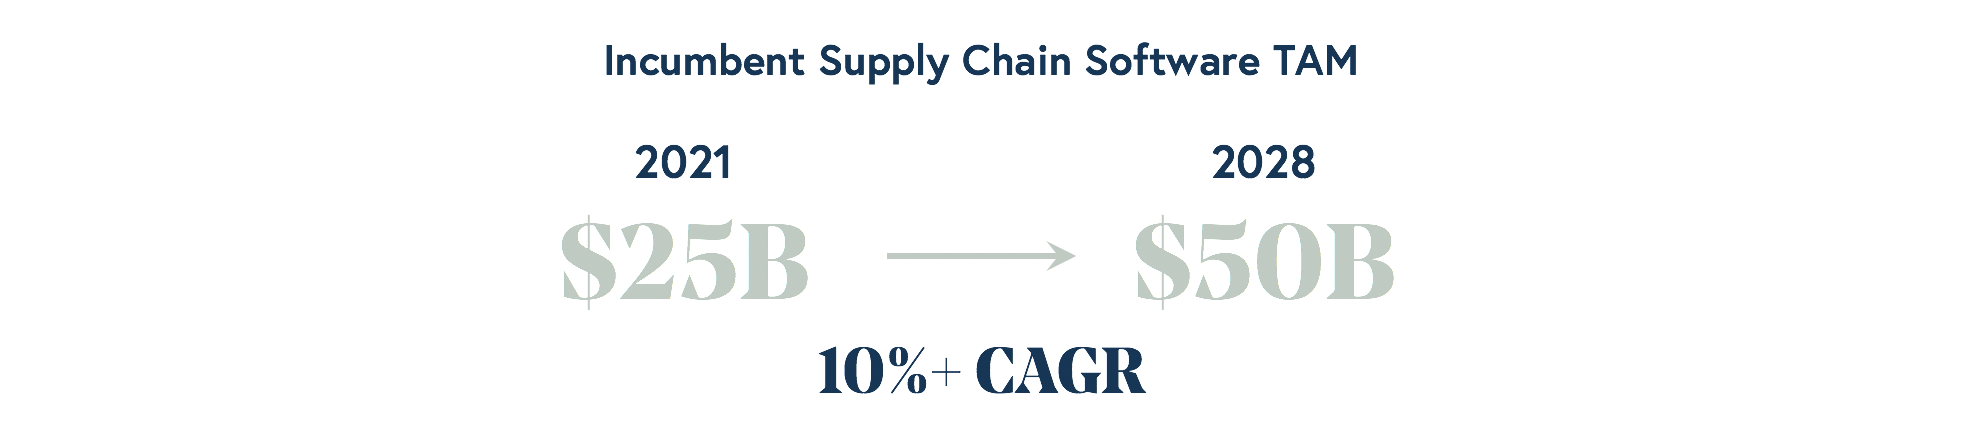 Incumbent supply chain software TAM 